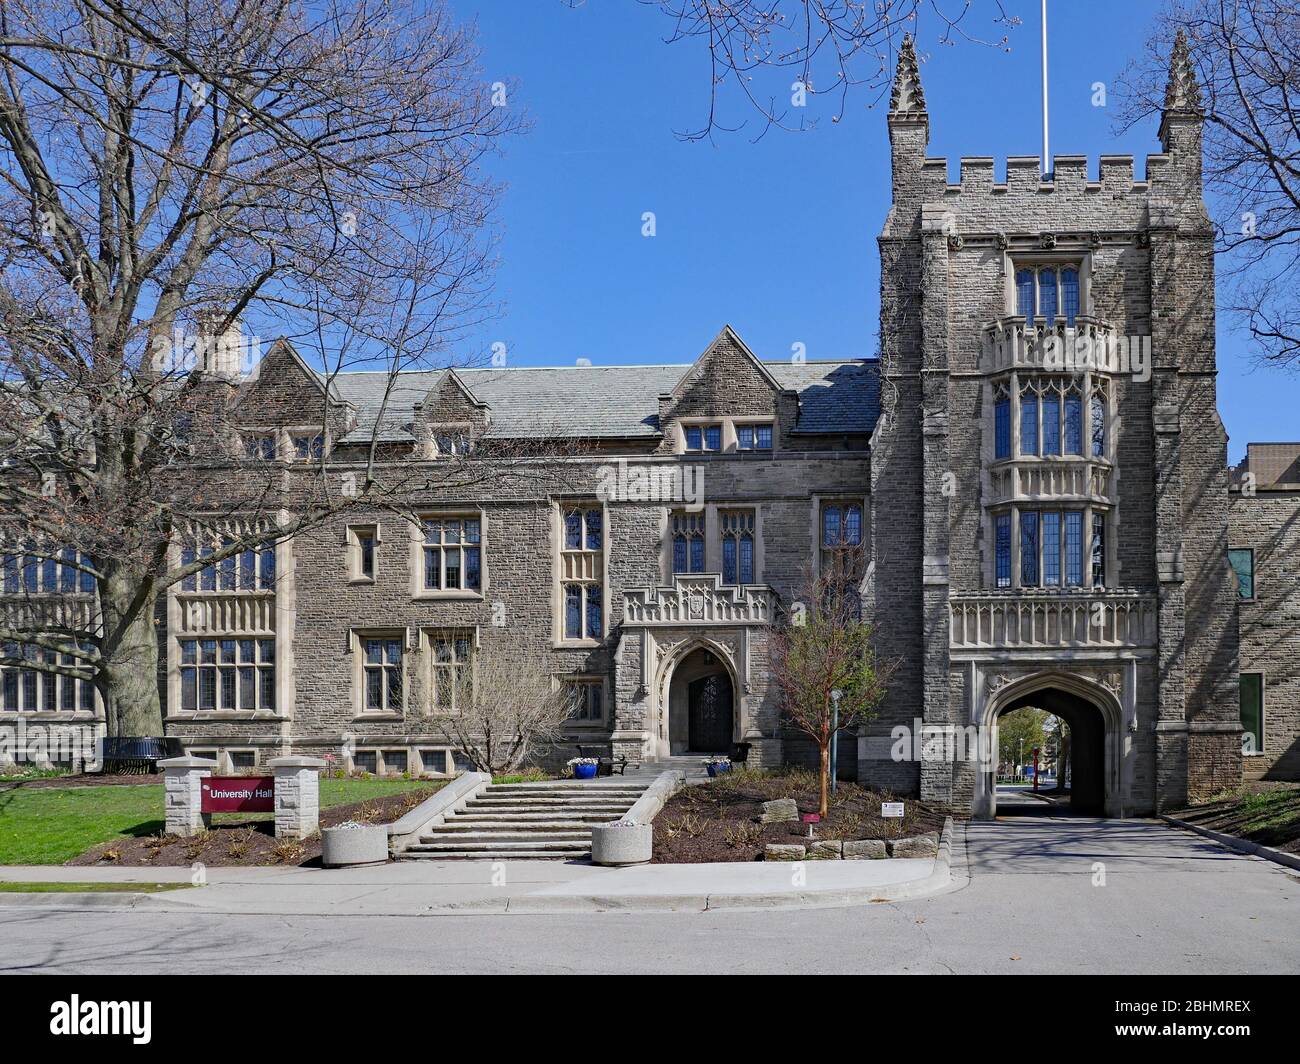 HAMILTON, CANADA - : un vecchio edificio in stile gotico presso la McMaster University, tipico dell'architettura gotica collegiata del Nord America. Foto Stock